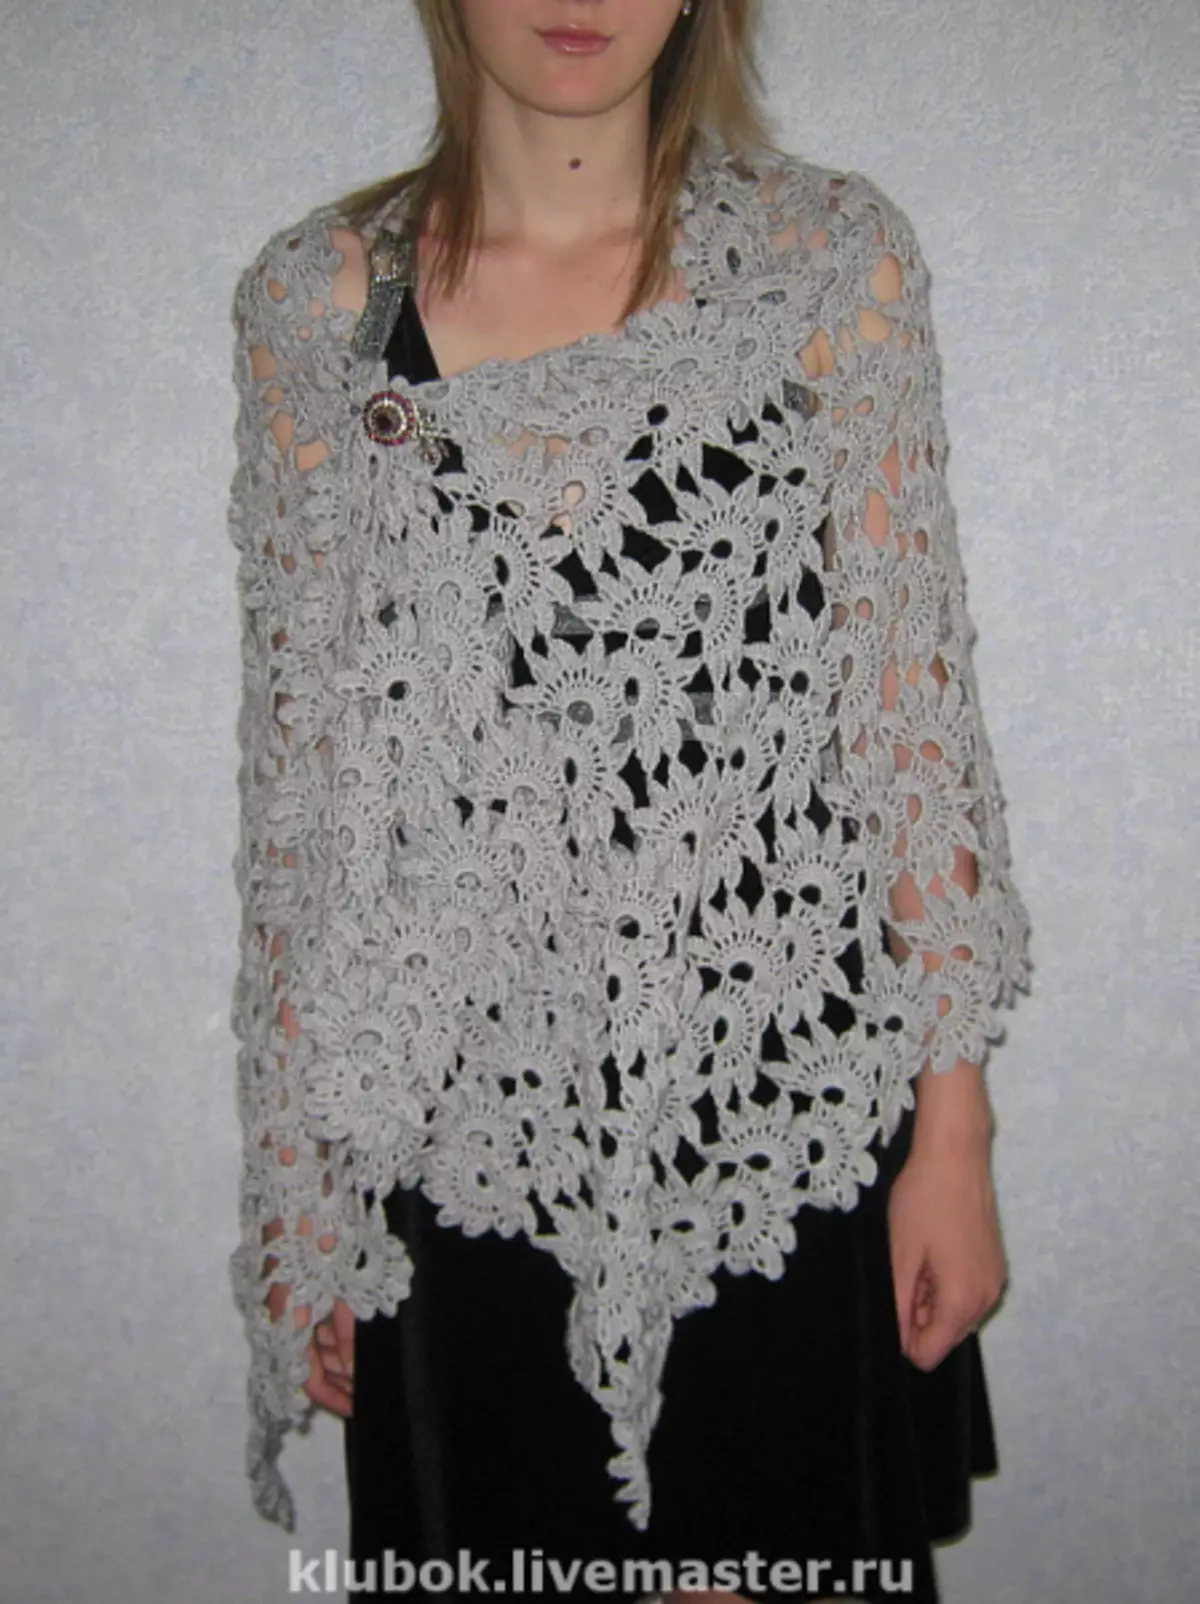 Crochet de encaixe de cinta: esquemas e modelos, como tricotar roupa nova con fotos e vídeos